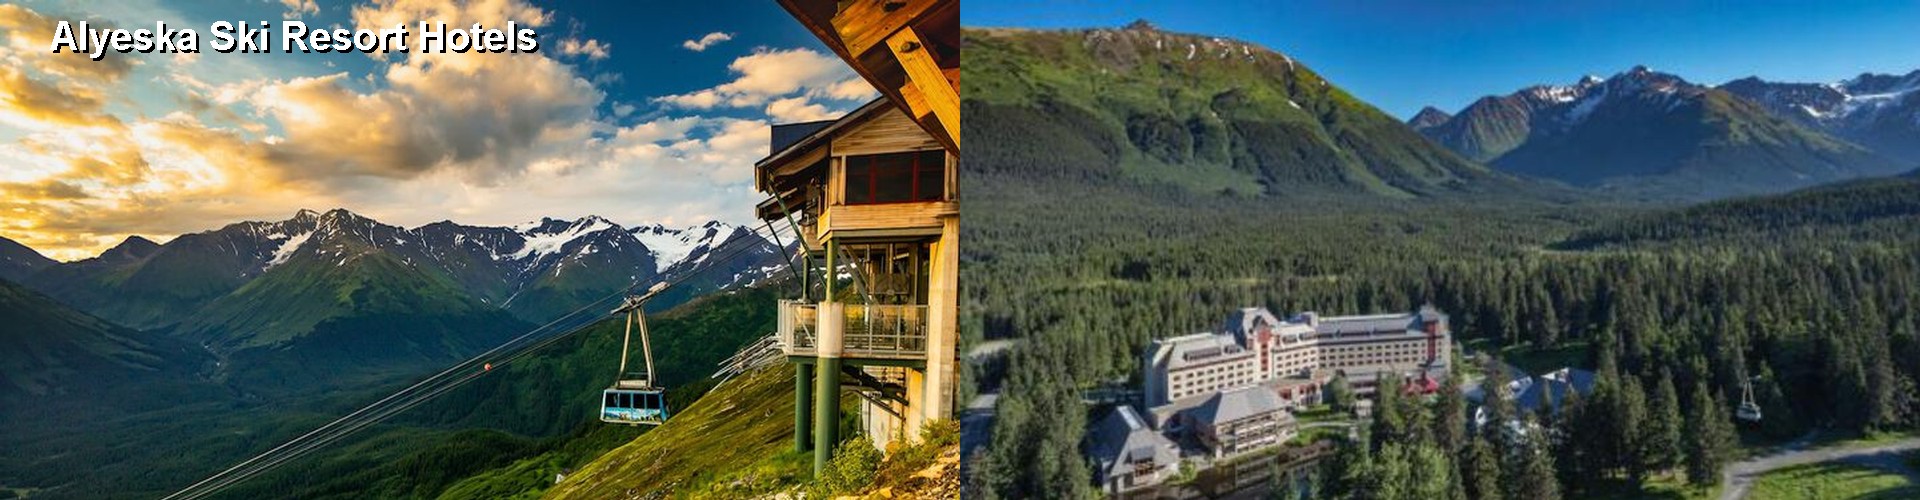 5 Best Hotels near Alyeska Ski Resort